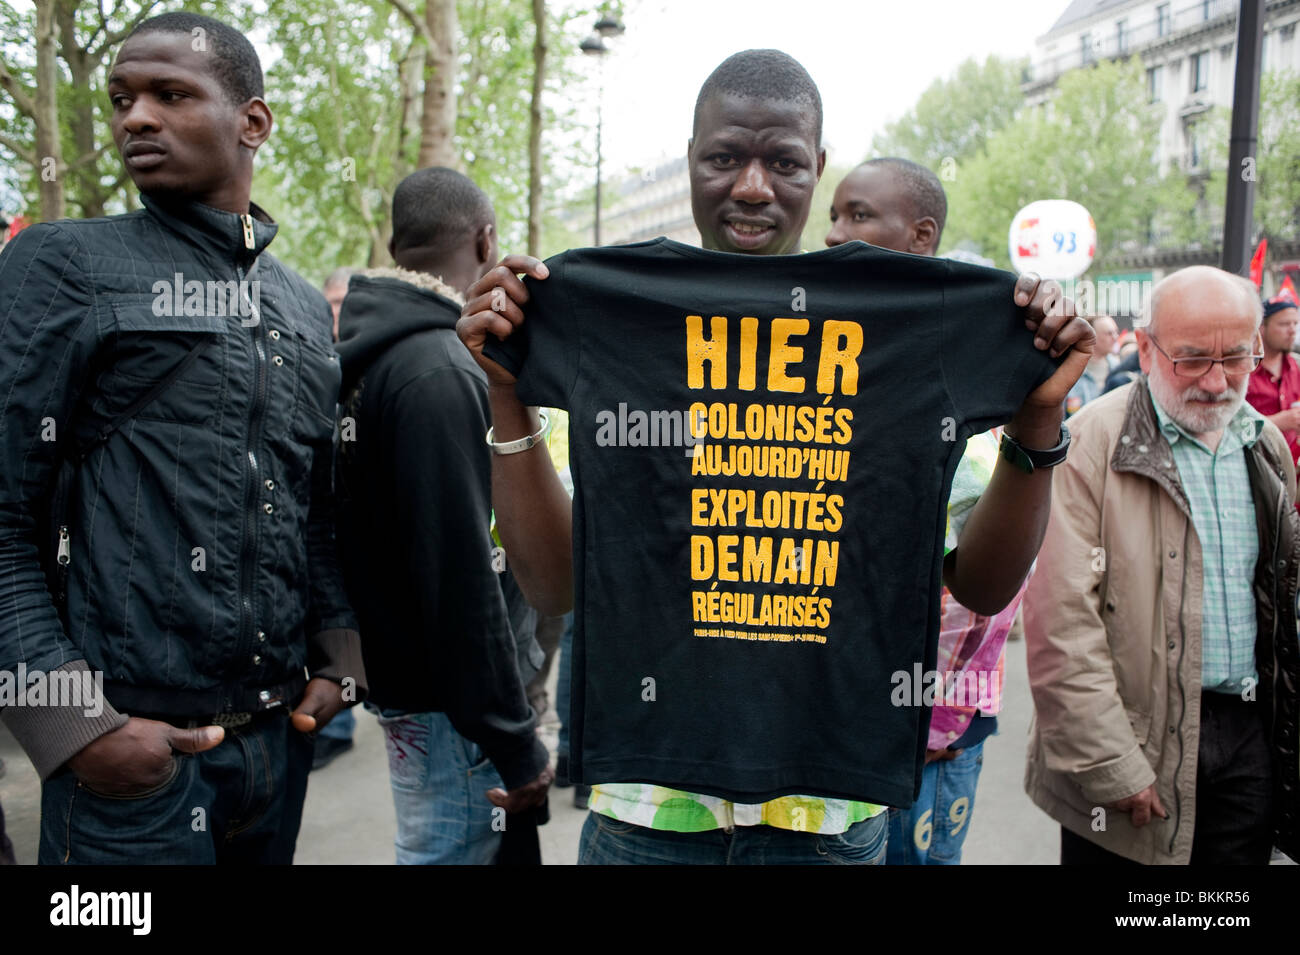 Inmigrantes africanos, réfugiés, camiseta de Holding, eslogan de la camiseta en francés en manifestación en mayo de 1, Labor, manifestación del día de mayo, París, Francia, Manifestación por protestas xenófobas, derechos de los inmigrantes laborales, rally de inmigración RETRATO DE TIPO EN LA CALLE Foto de stock